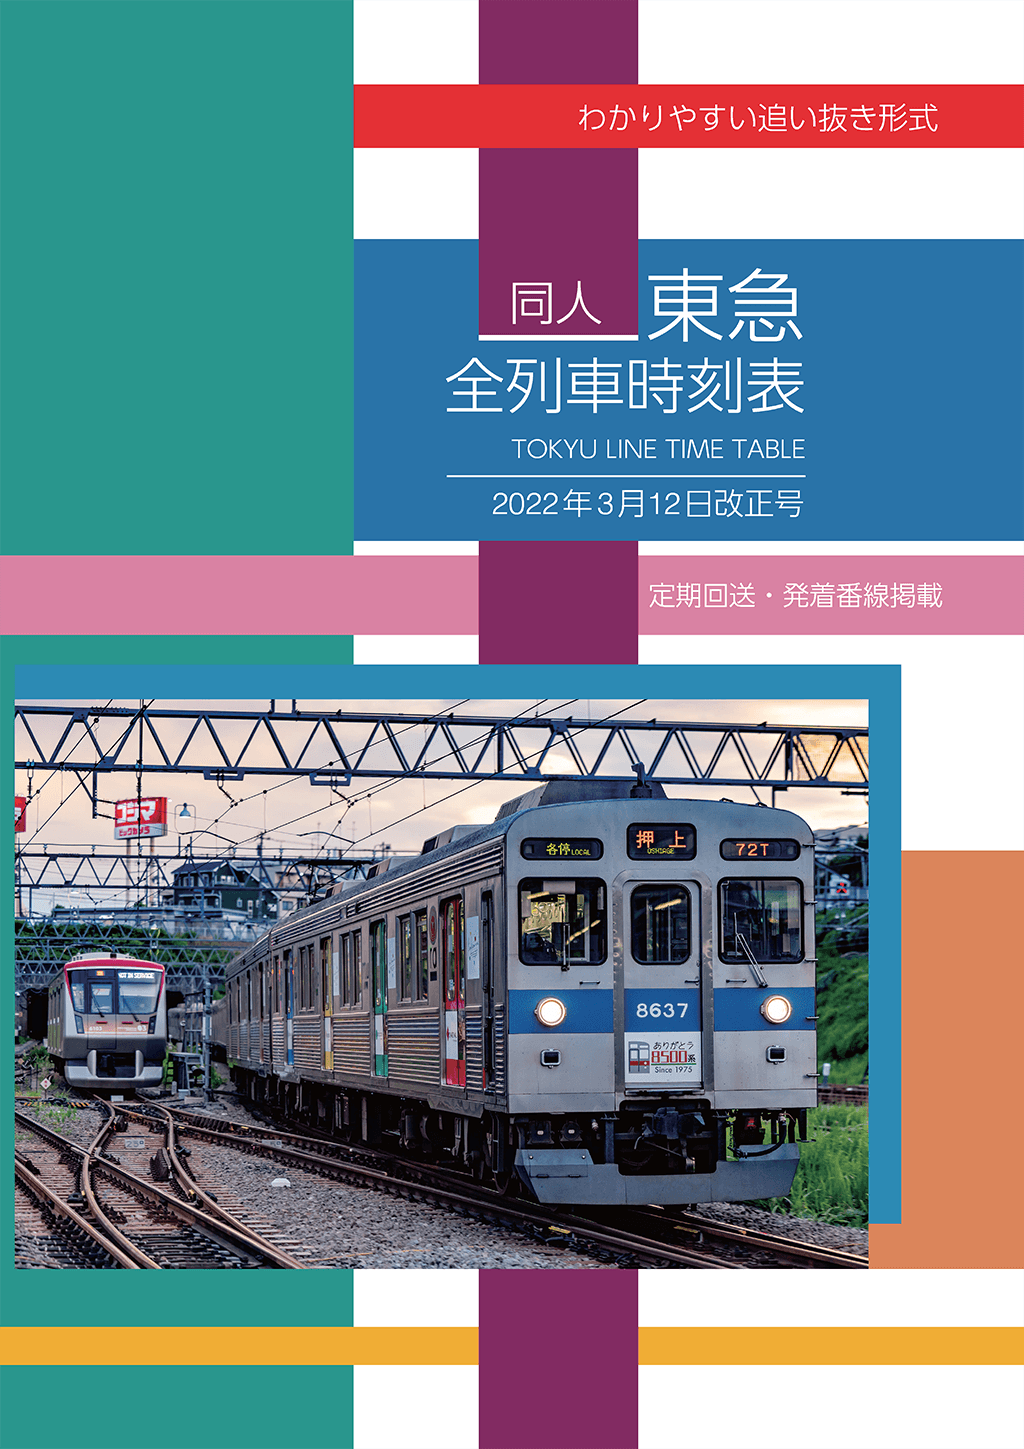 同人 東急全列車時刻表 2022年3月12日改正号